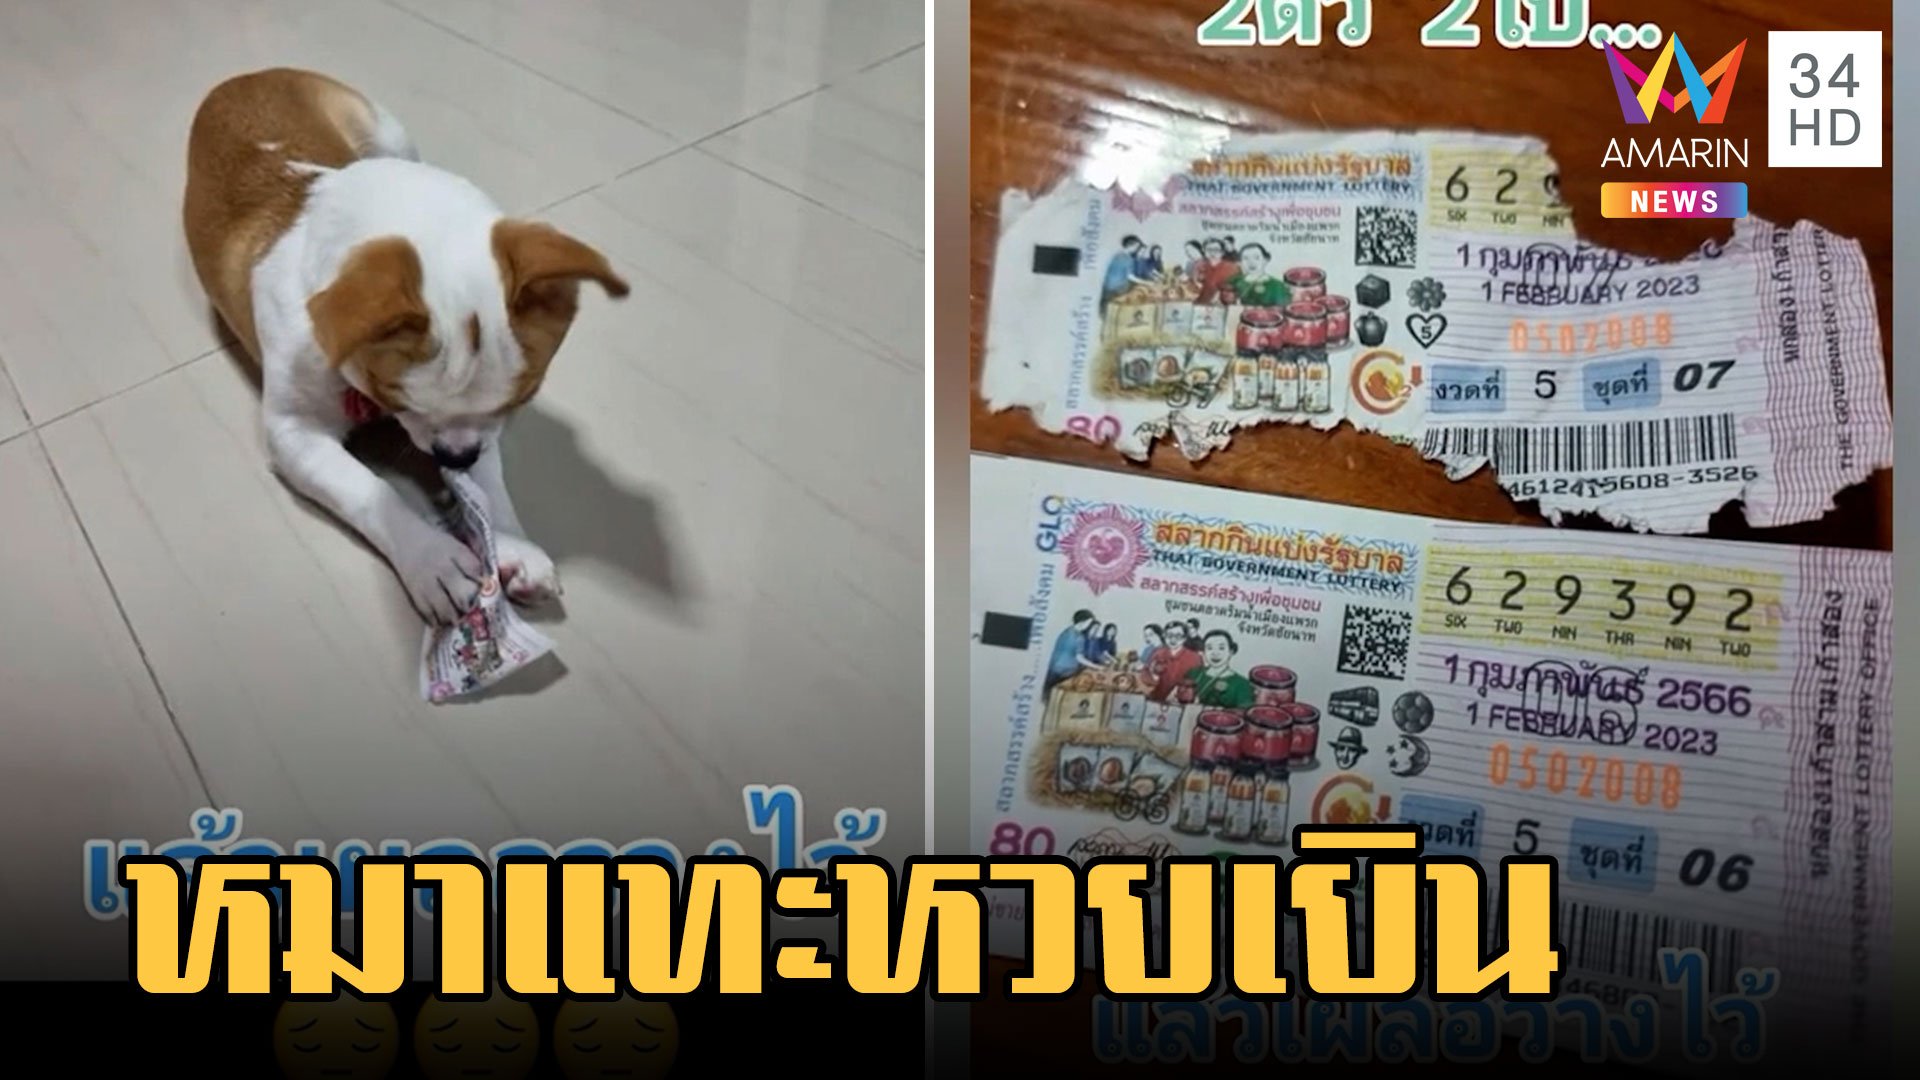 น้ำตาตก! หมาชิวาวากัดลอตเตอรี่ถูกรางวัล 2 ตัว | ข่าวเที่ยงอมรินทร์ | 2 ก.พ. 66 | AMARIN TVHD34